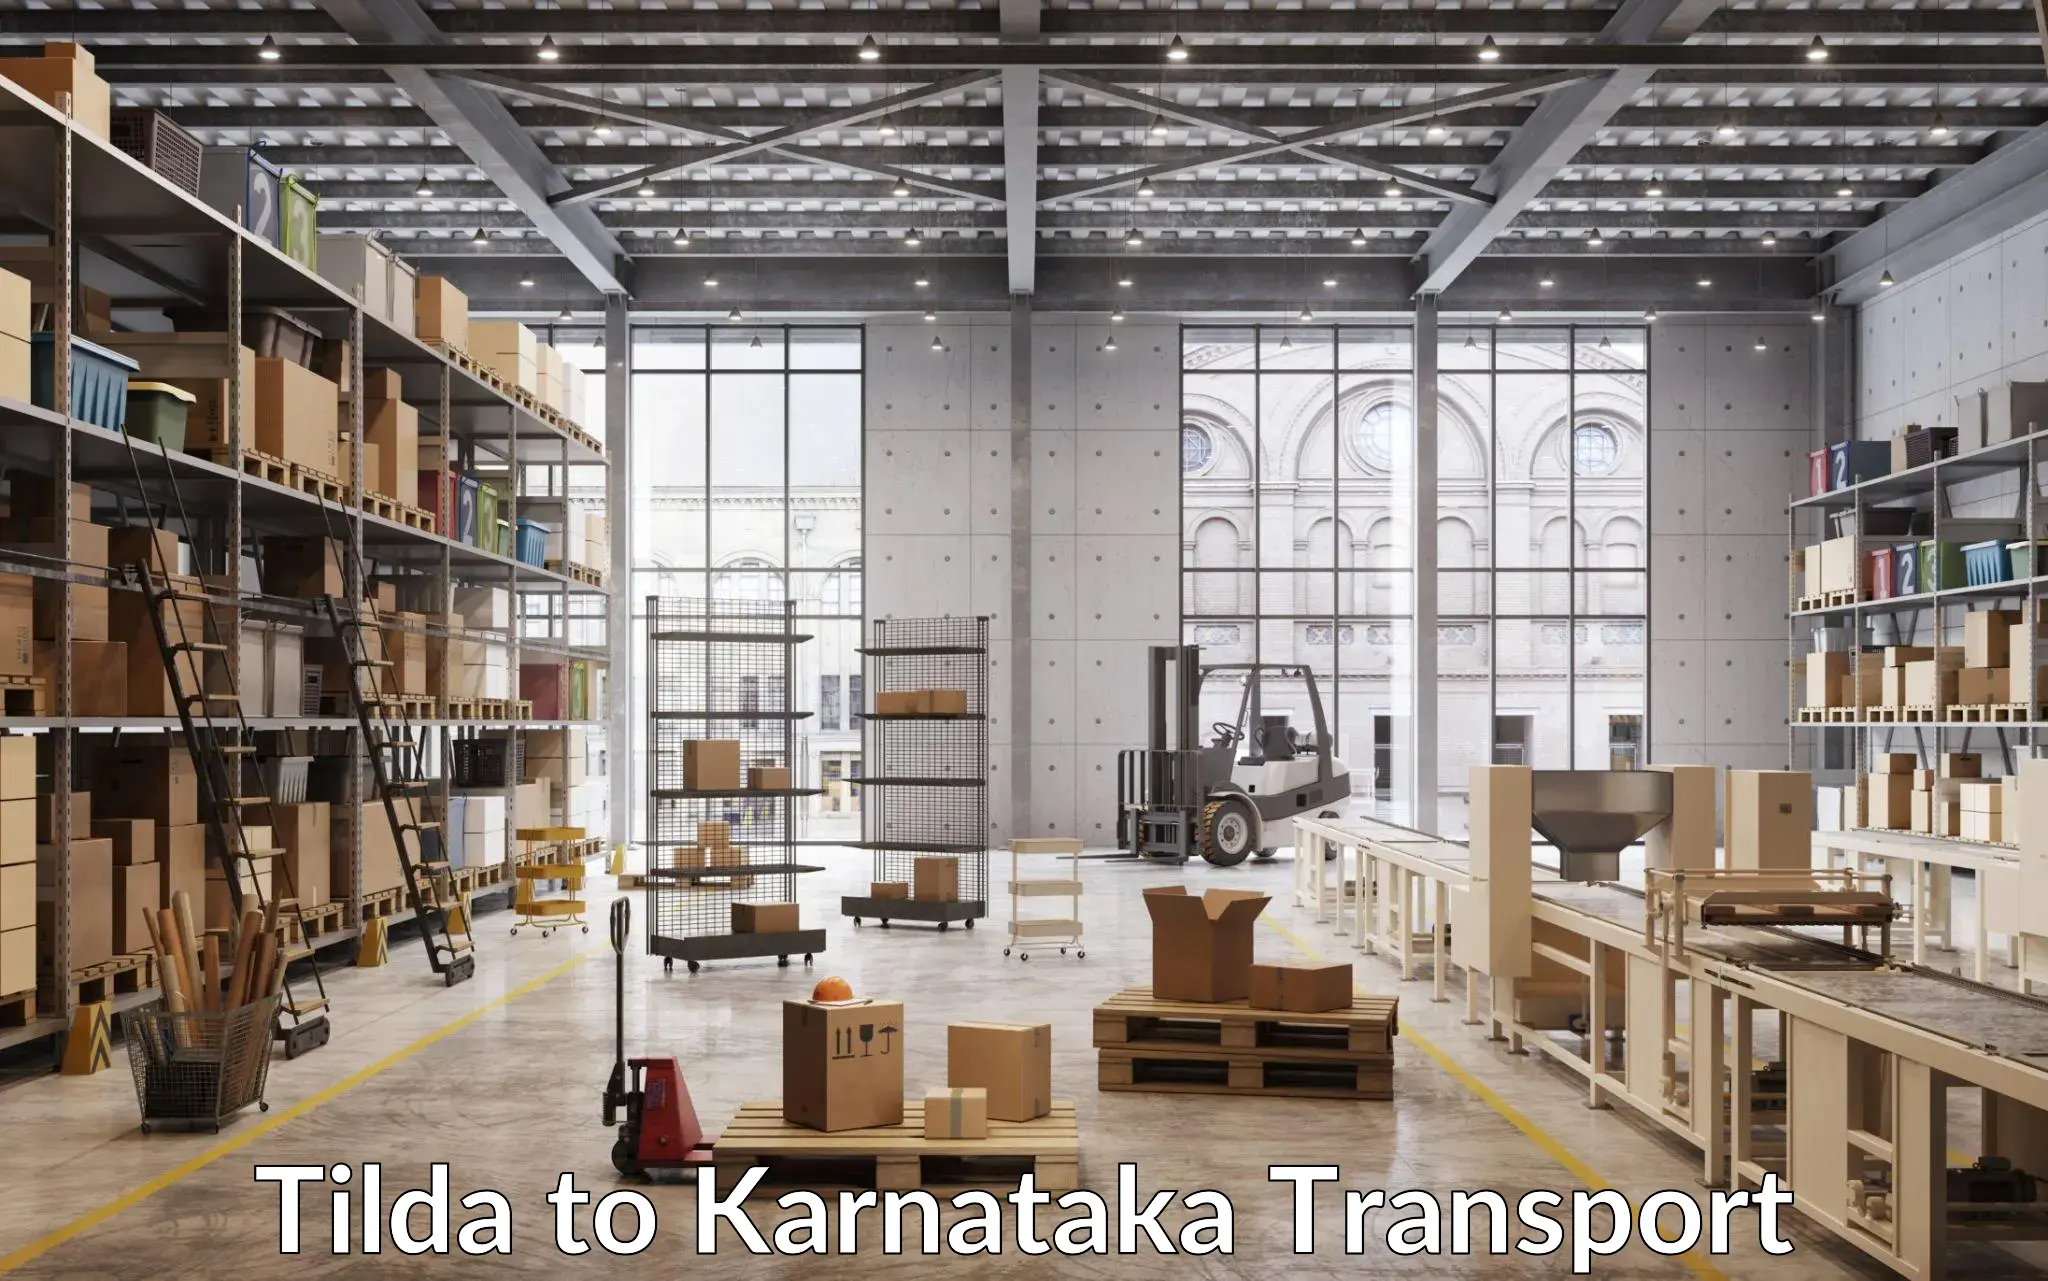 Nearby transport service Tilda to Karkala